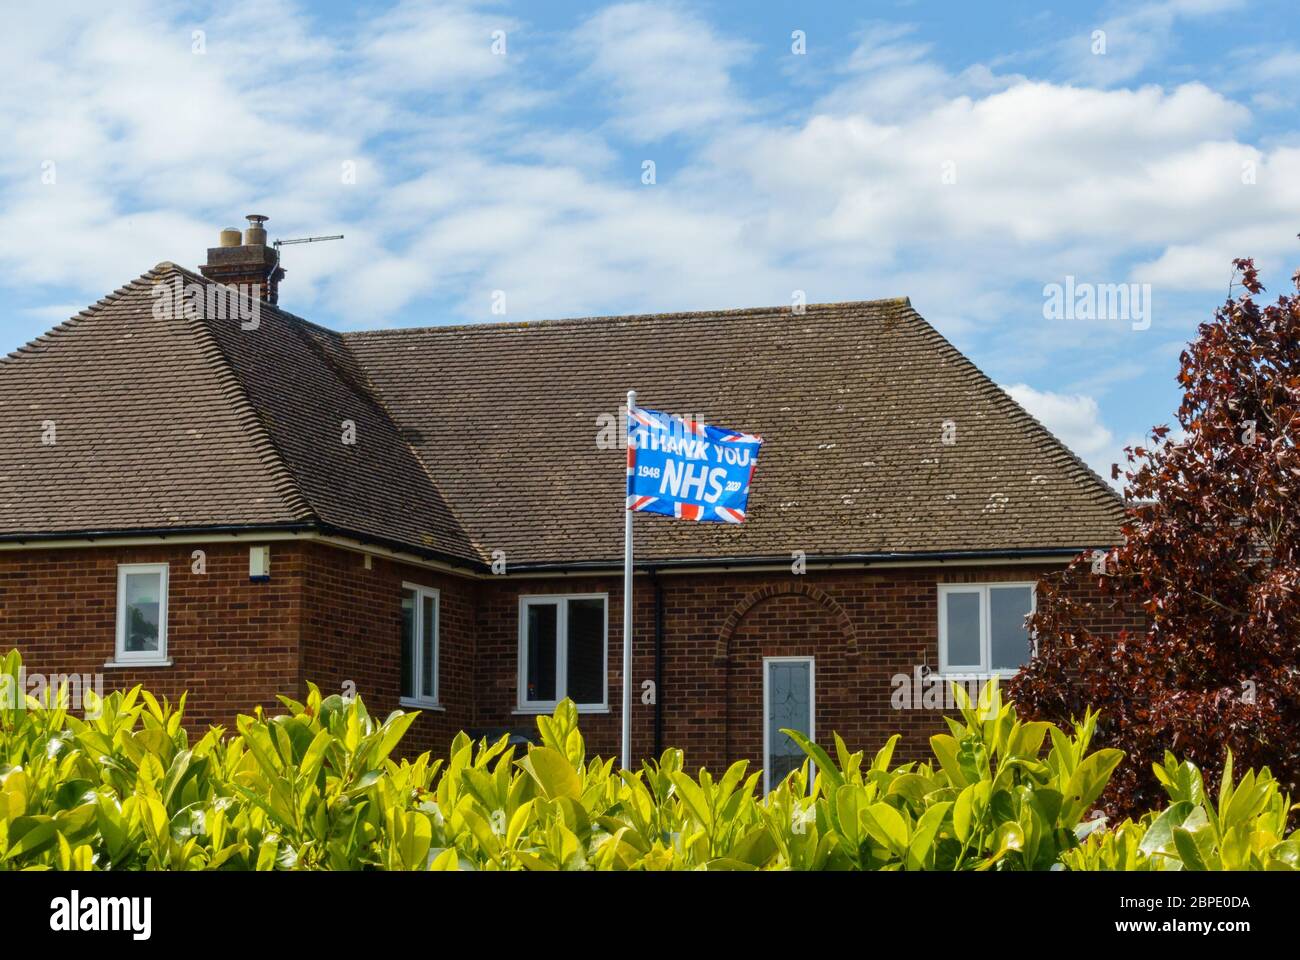 'Grazie NHS' bandiera sindacale che vola sul flagpole di fronte a casa per dire grazie a NHS durante la pandemia coronavirus, maggio 2020, Inghilterra, Regno Unito Foto Stock